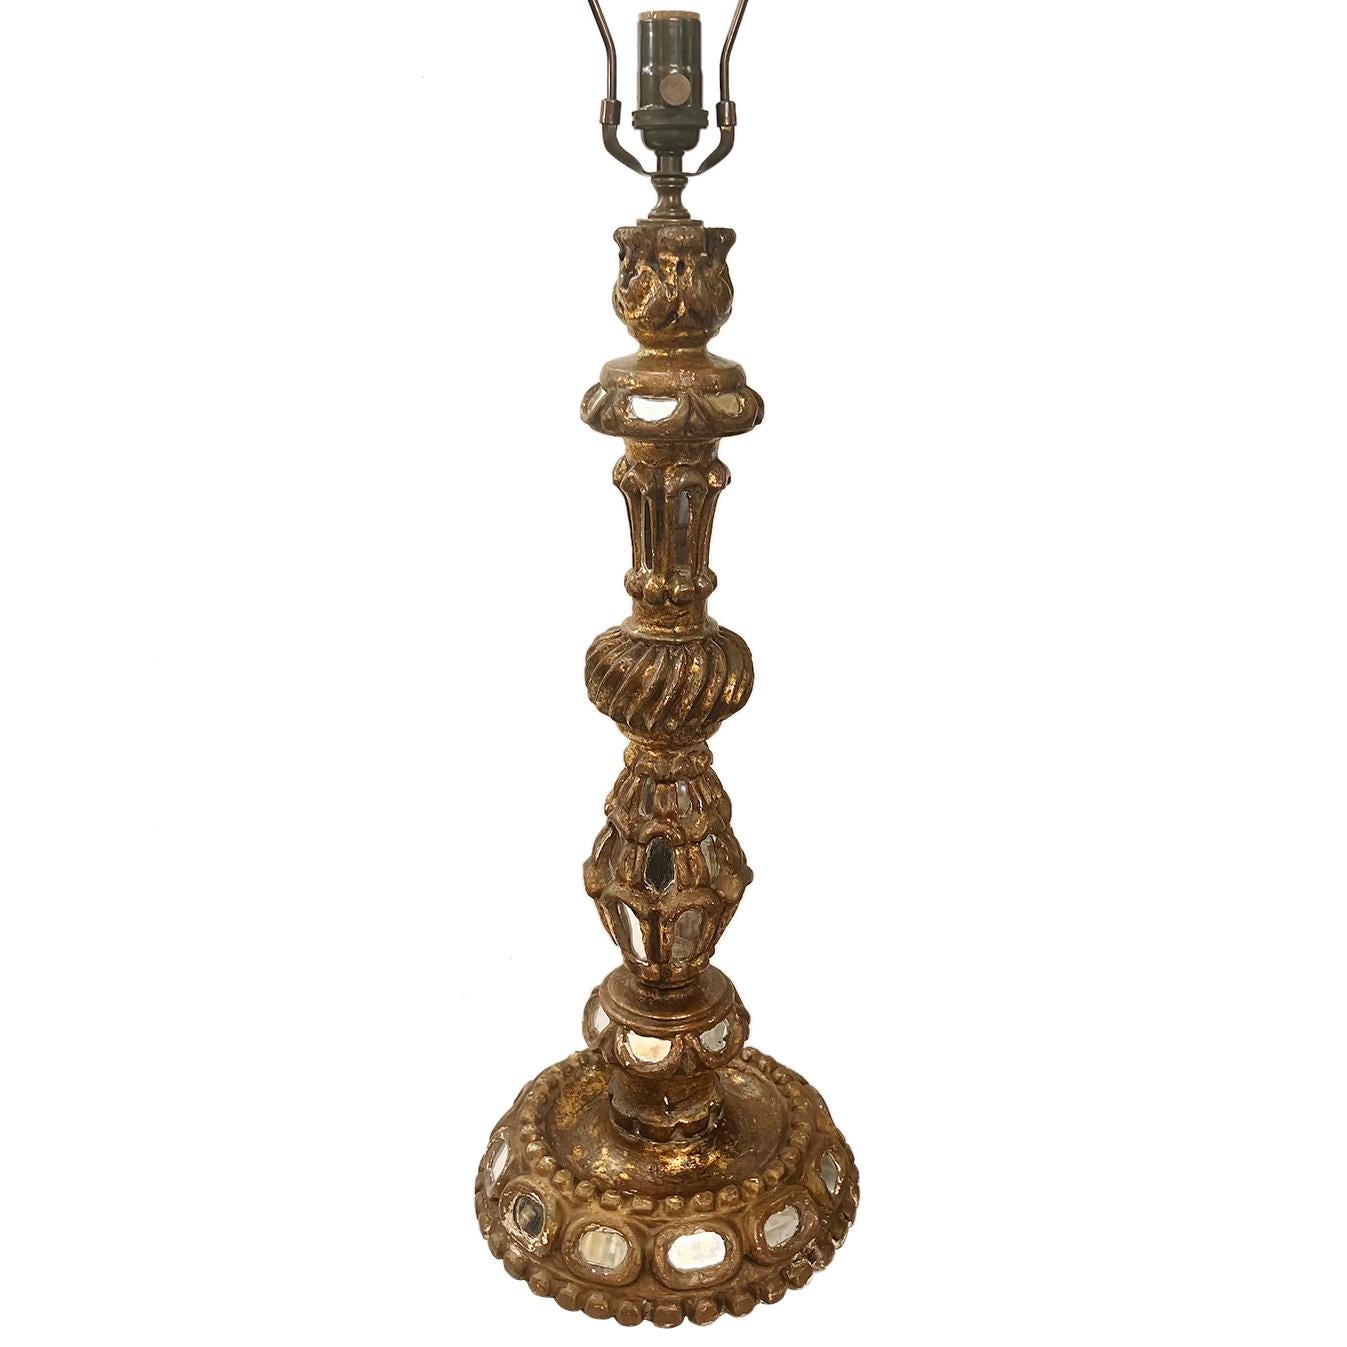 Lampe chandelier espagnole des années 1920 avec inserts en miroir.

Mesures :
Hauteur du corps : 18″
Hauteur jusqu'au repose-ombre : 27″
Diamètre (base) : 9″